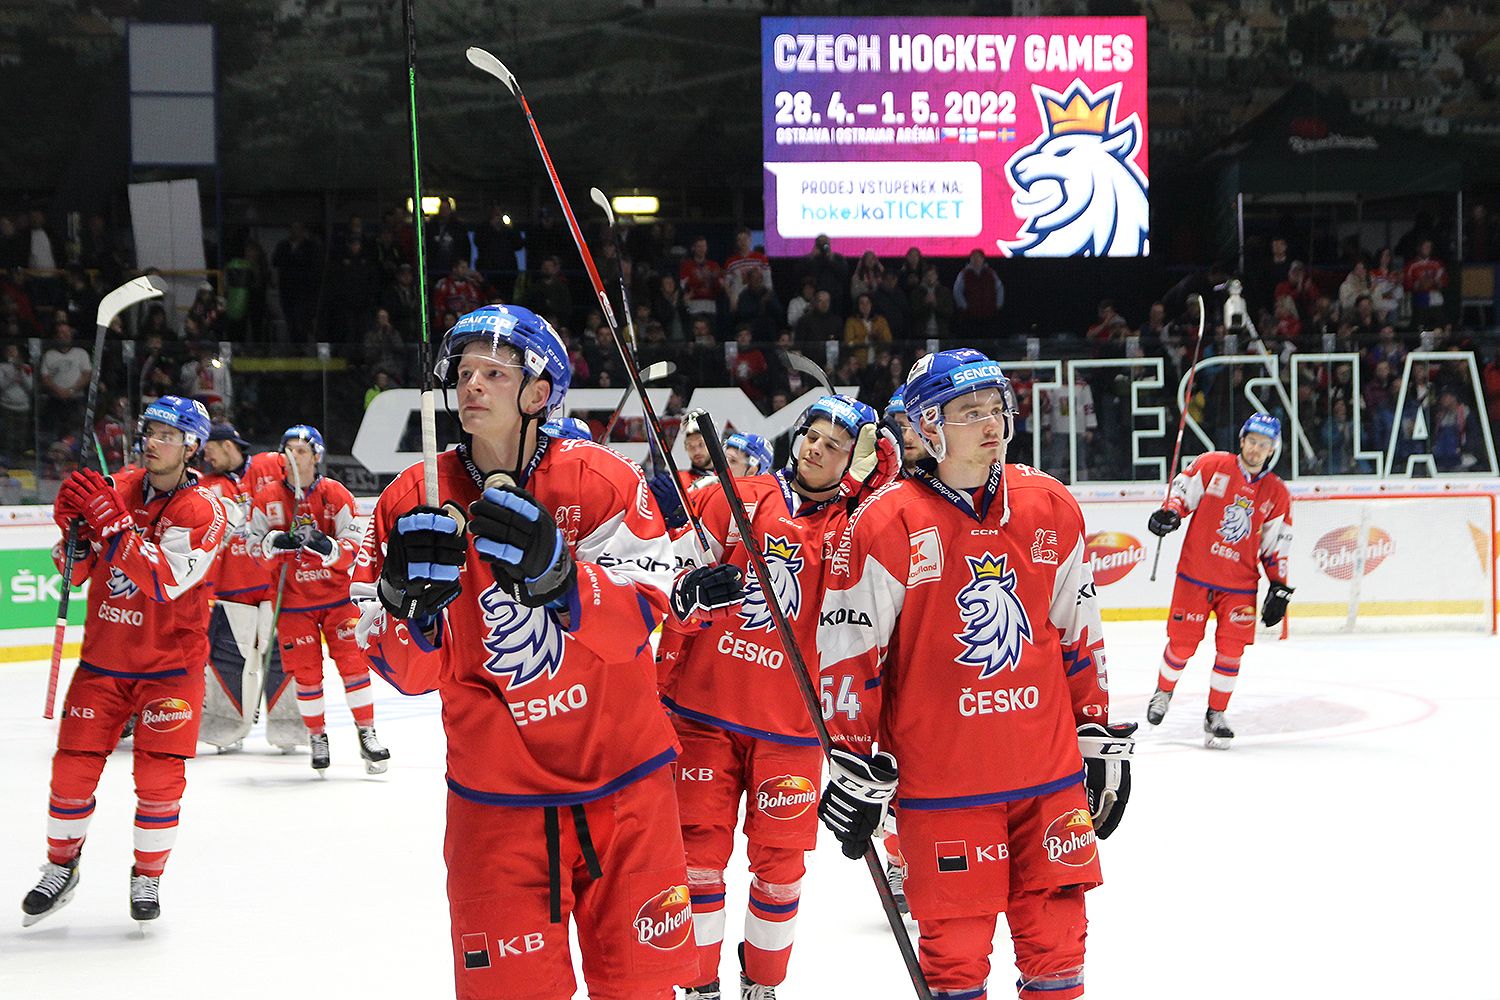 Wieder einmal gelang es den Tschechen, die Österreicher auf ihrem Eis zu schlagen.  Jalonens Team gewann 4:1